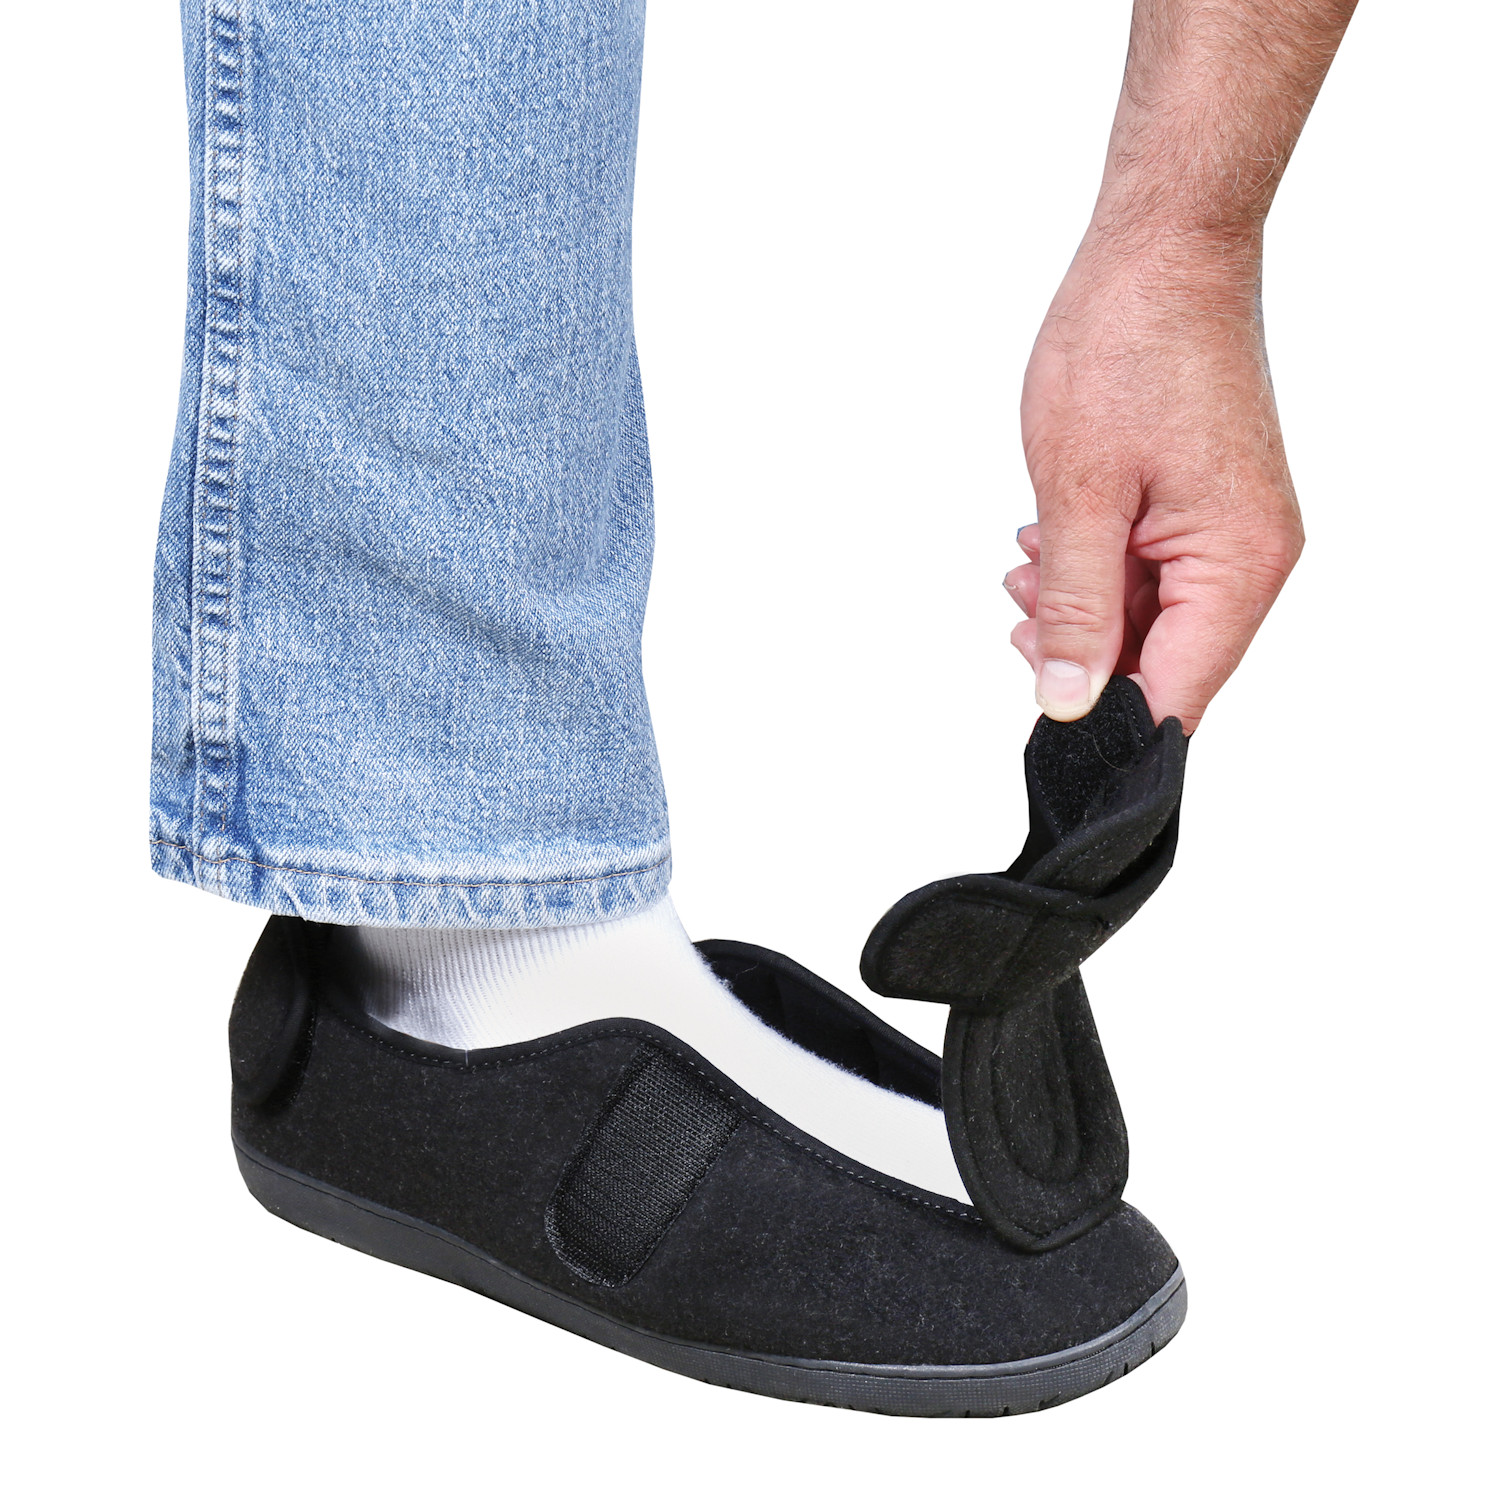 Foamtreads Men's Comfort Wool Swollen Feet Slippers | Support Plus